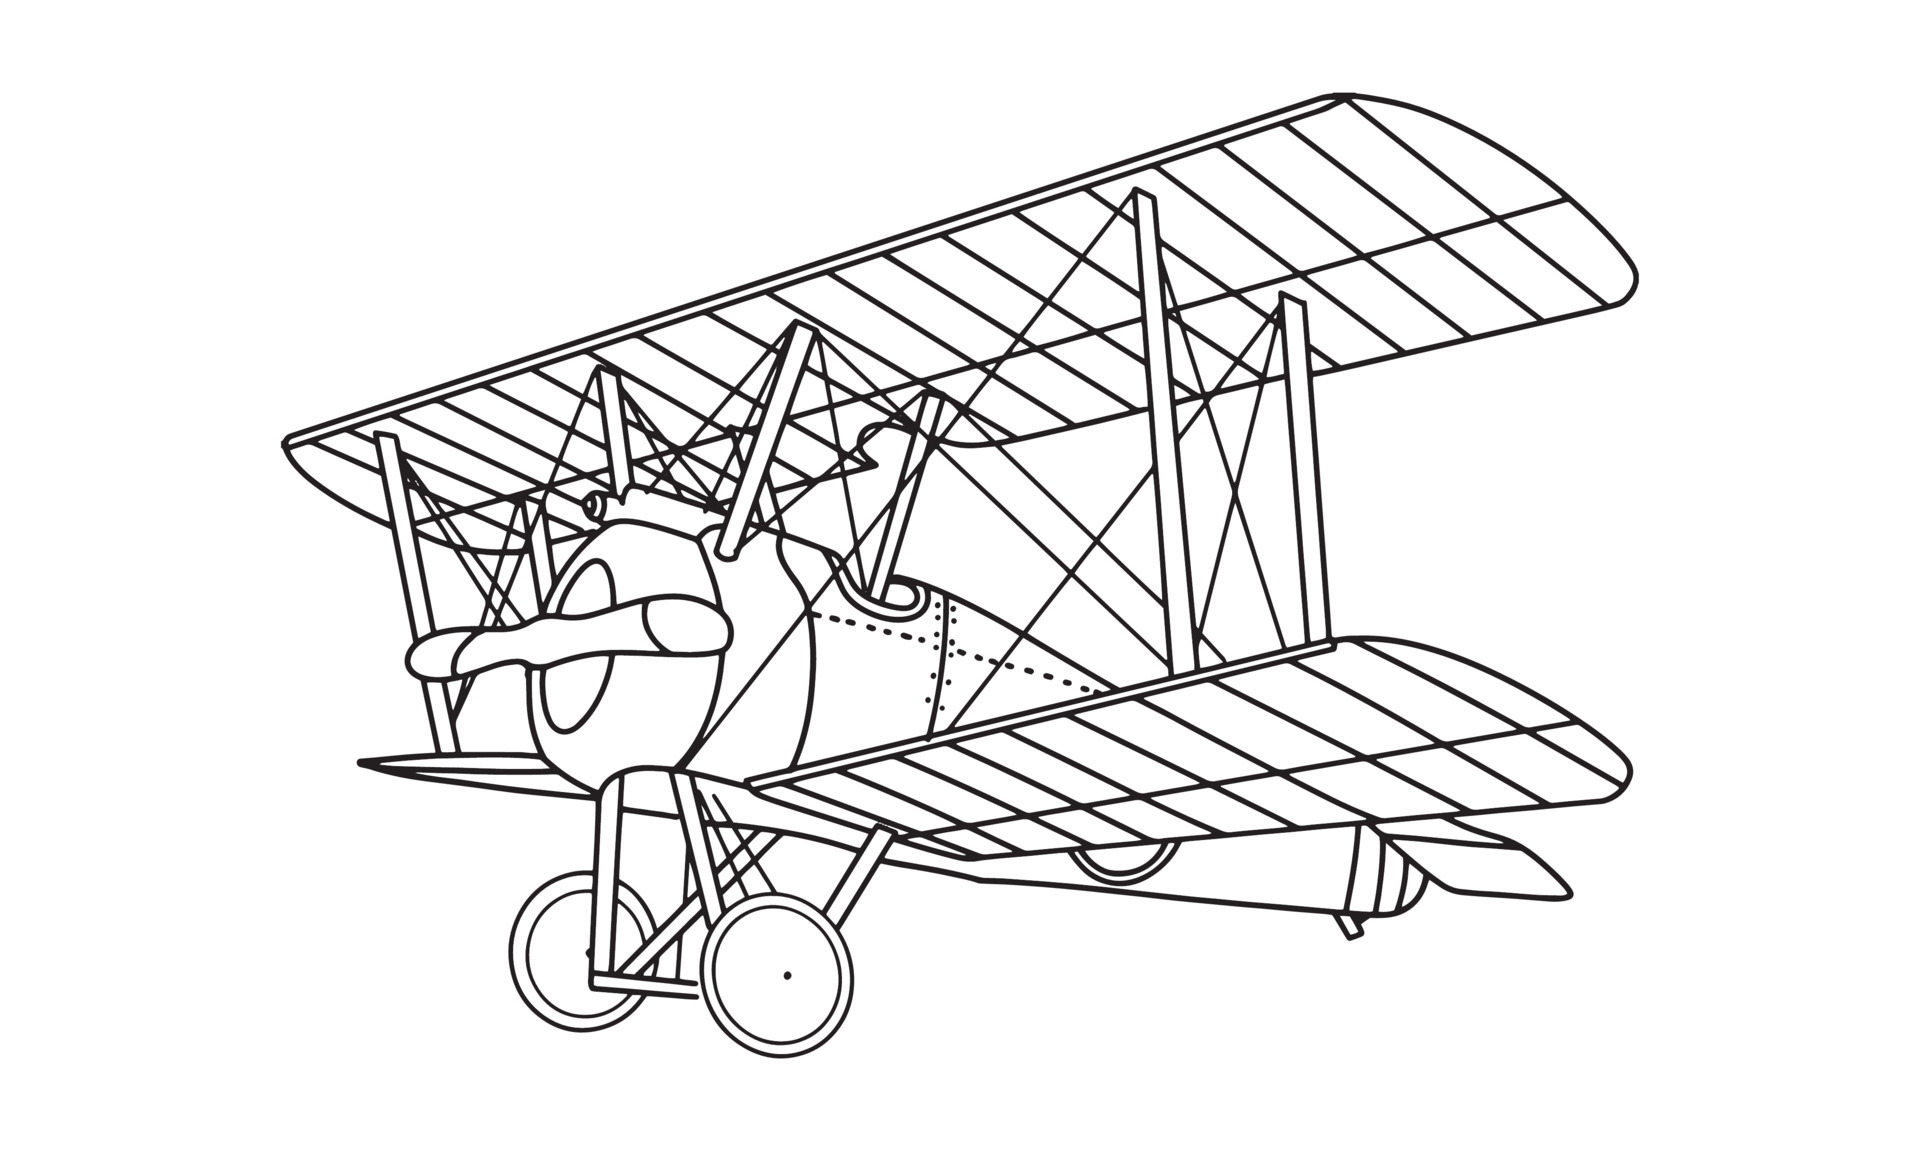 File:Biplane.jpg - Wikimedia Commons